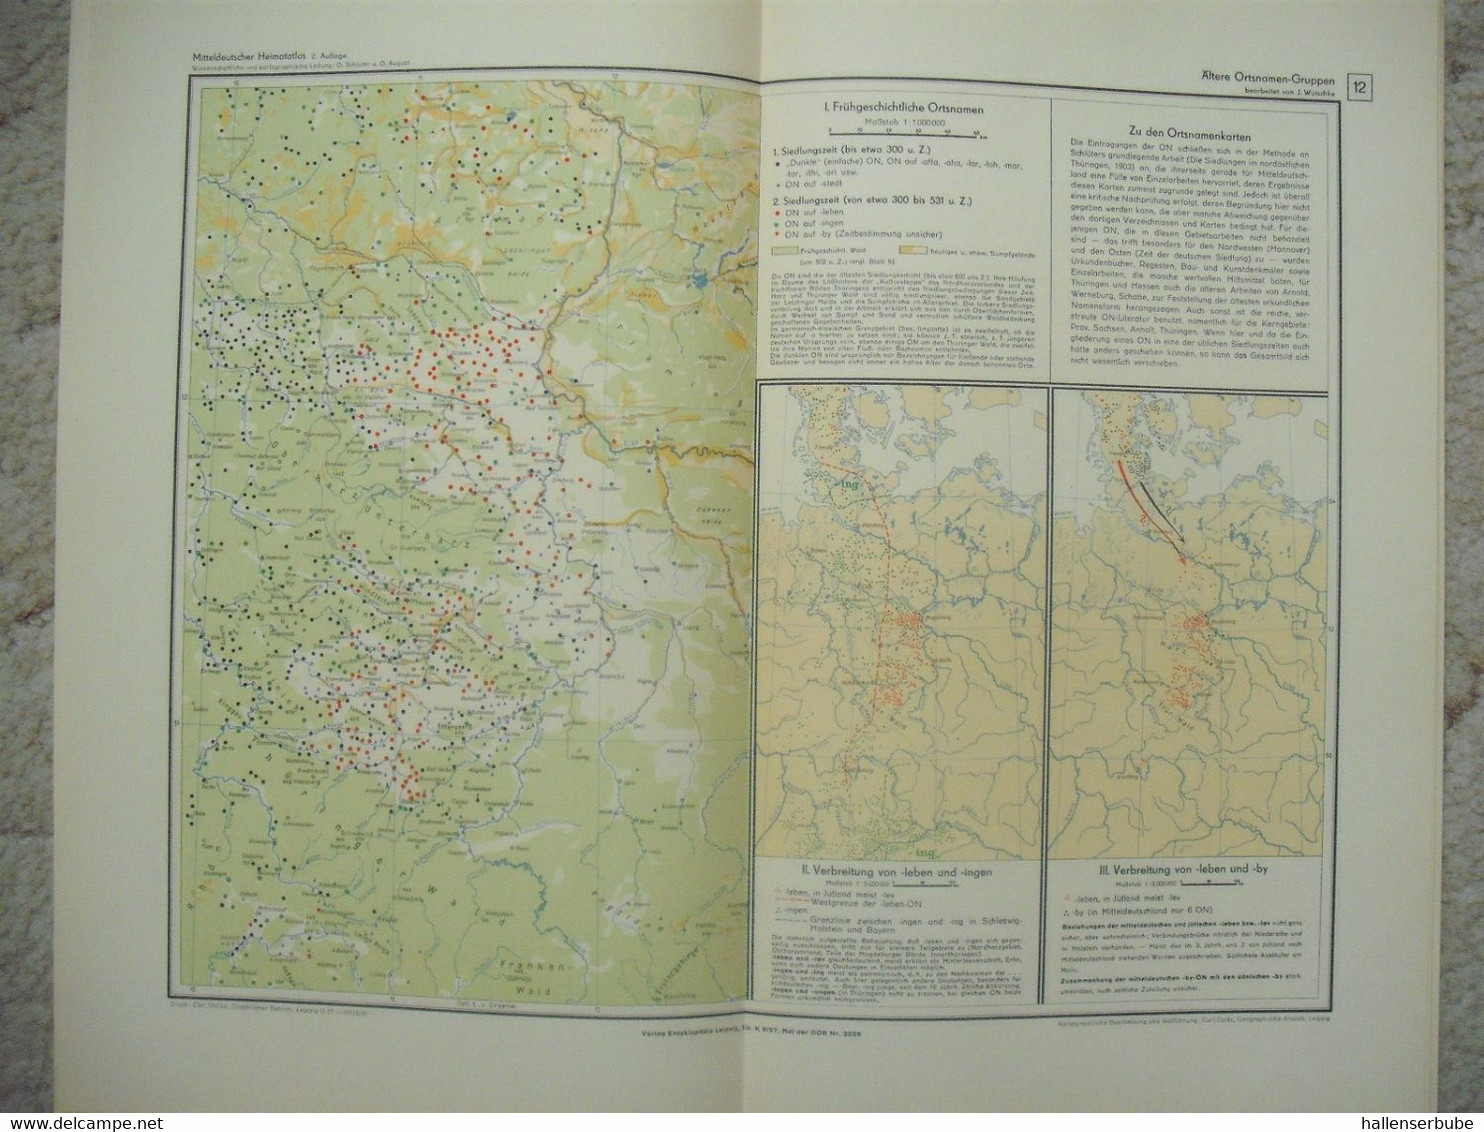 Atlas Des Saale- Und Mittleren Elbegebietes. Teil 1-3 Komplett. Otto Schlüter Und Oskar August. 1957-1961 - Wereldkaarten